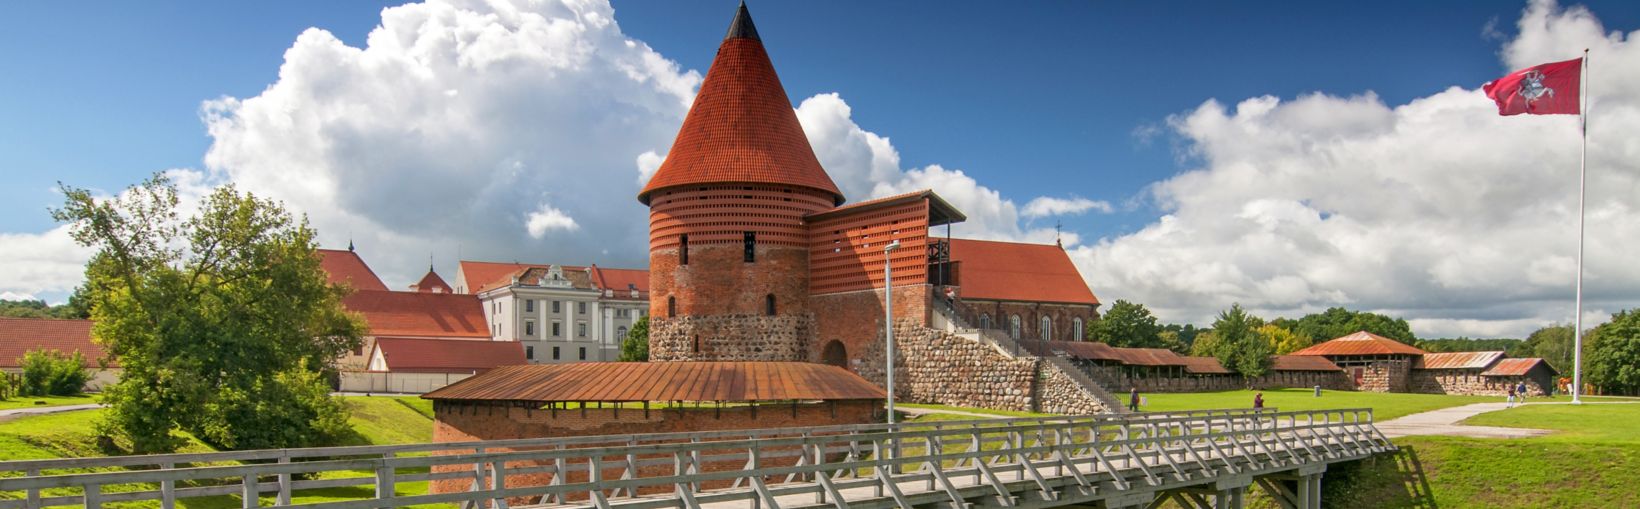 Castillo de Kaunas, construido a mediados del siglo XIV, de estilo gótico, Kaunas, Lituania.